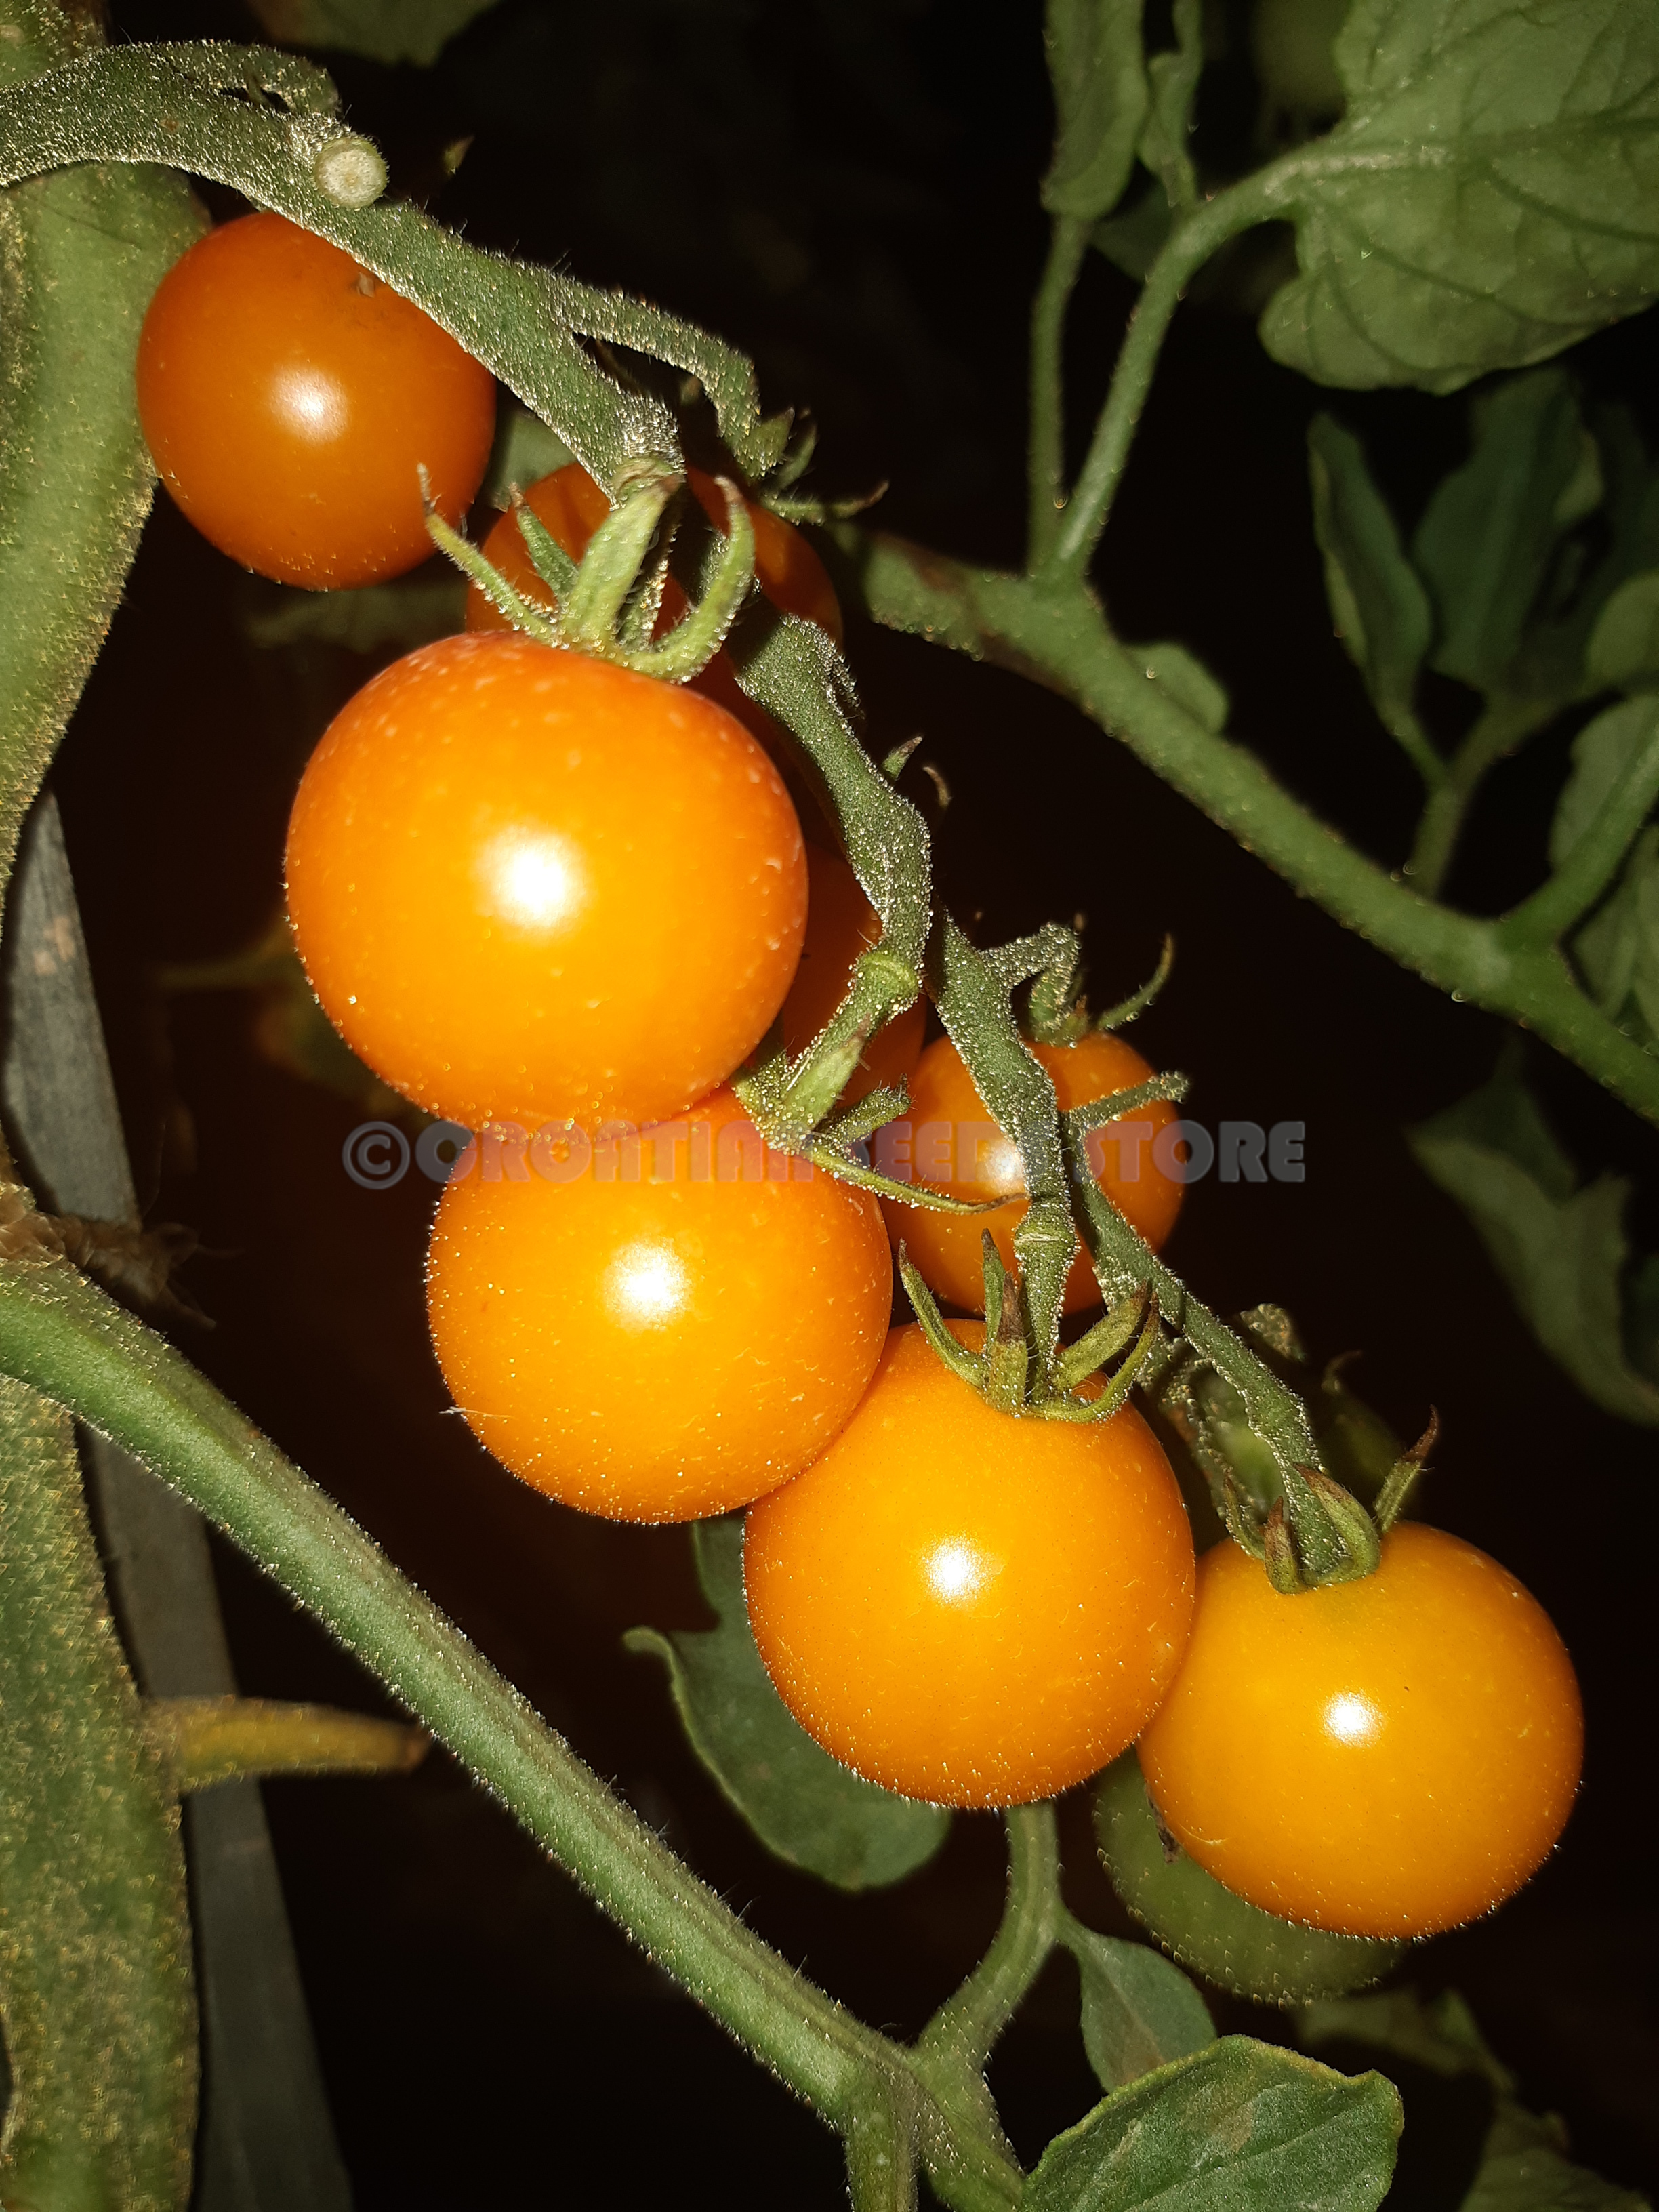 yellow cherry tomatoes